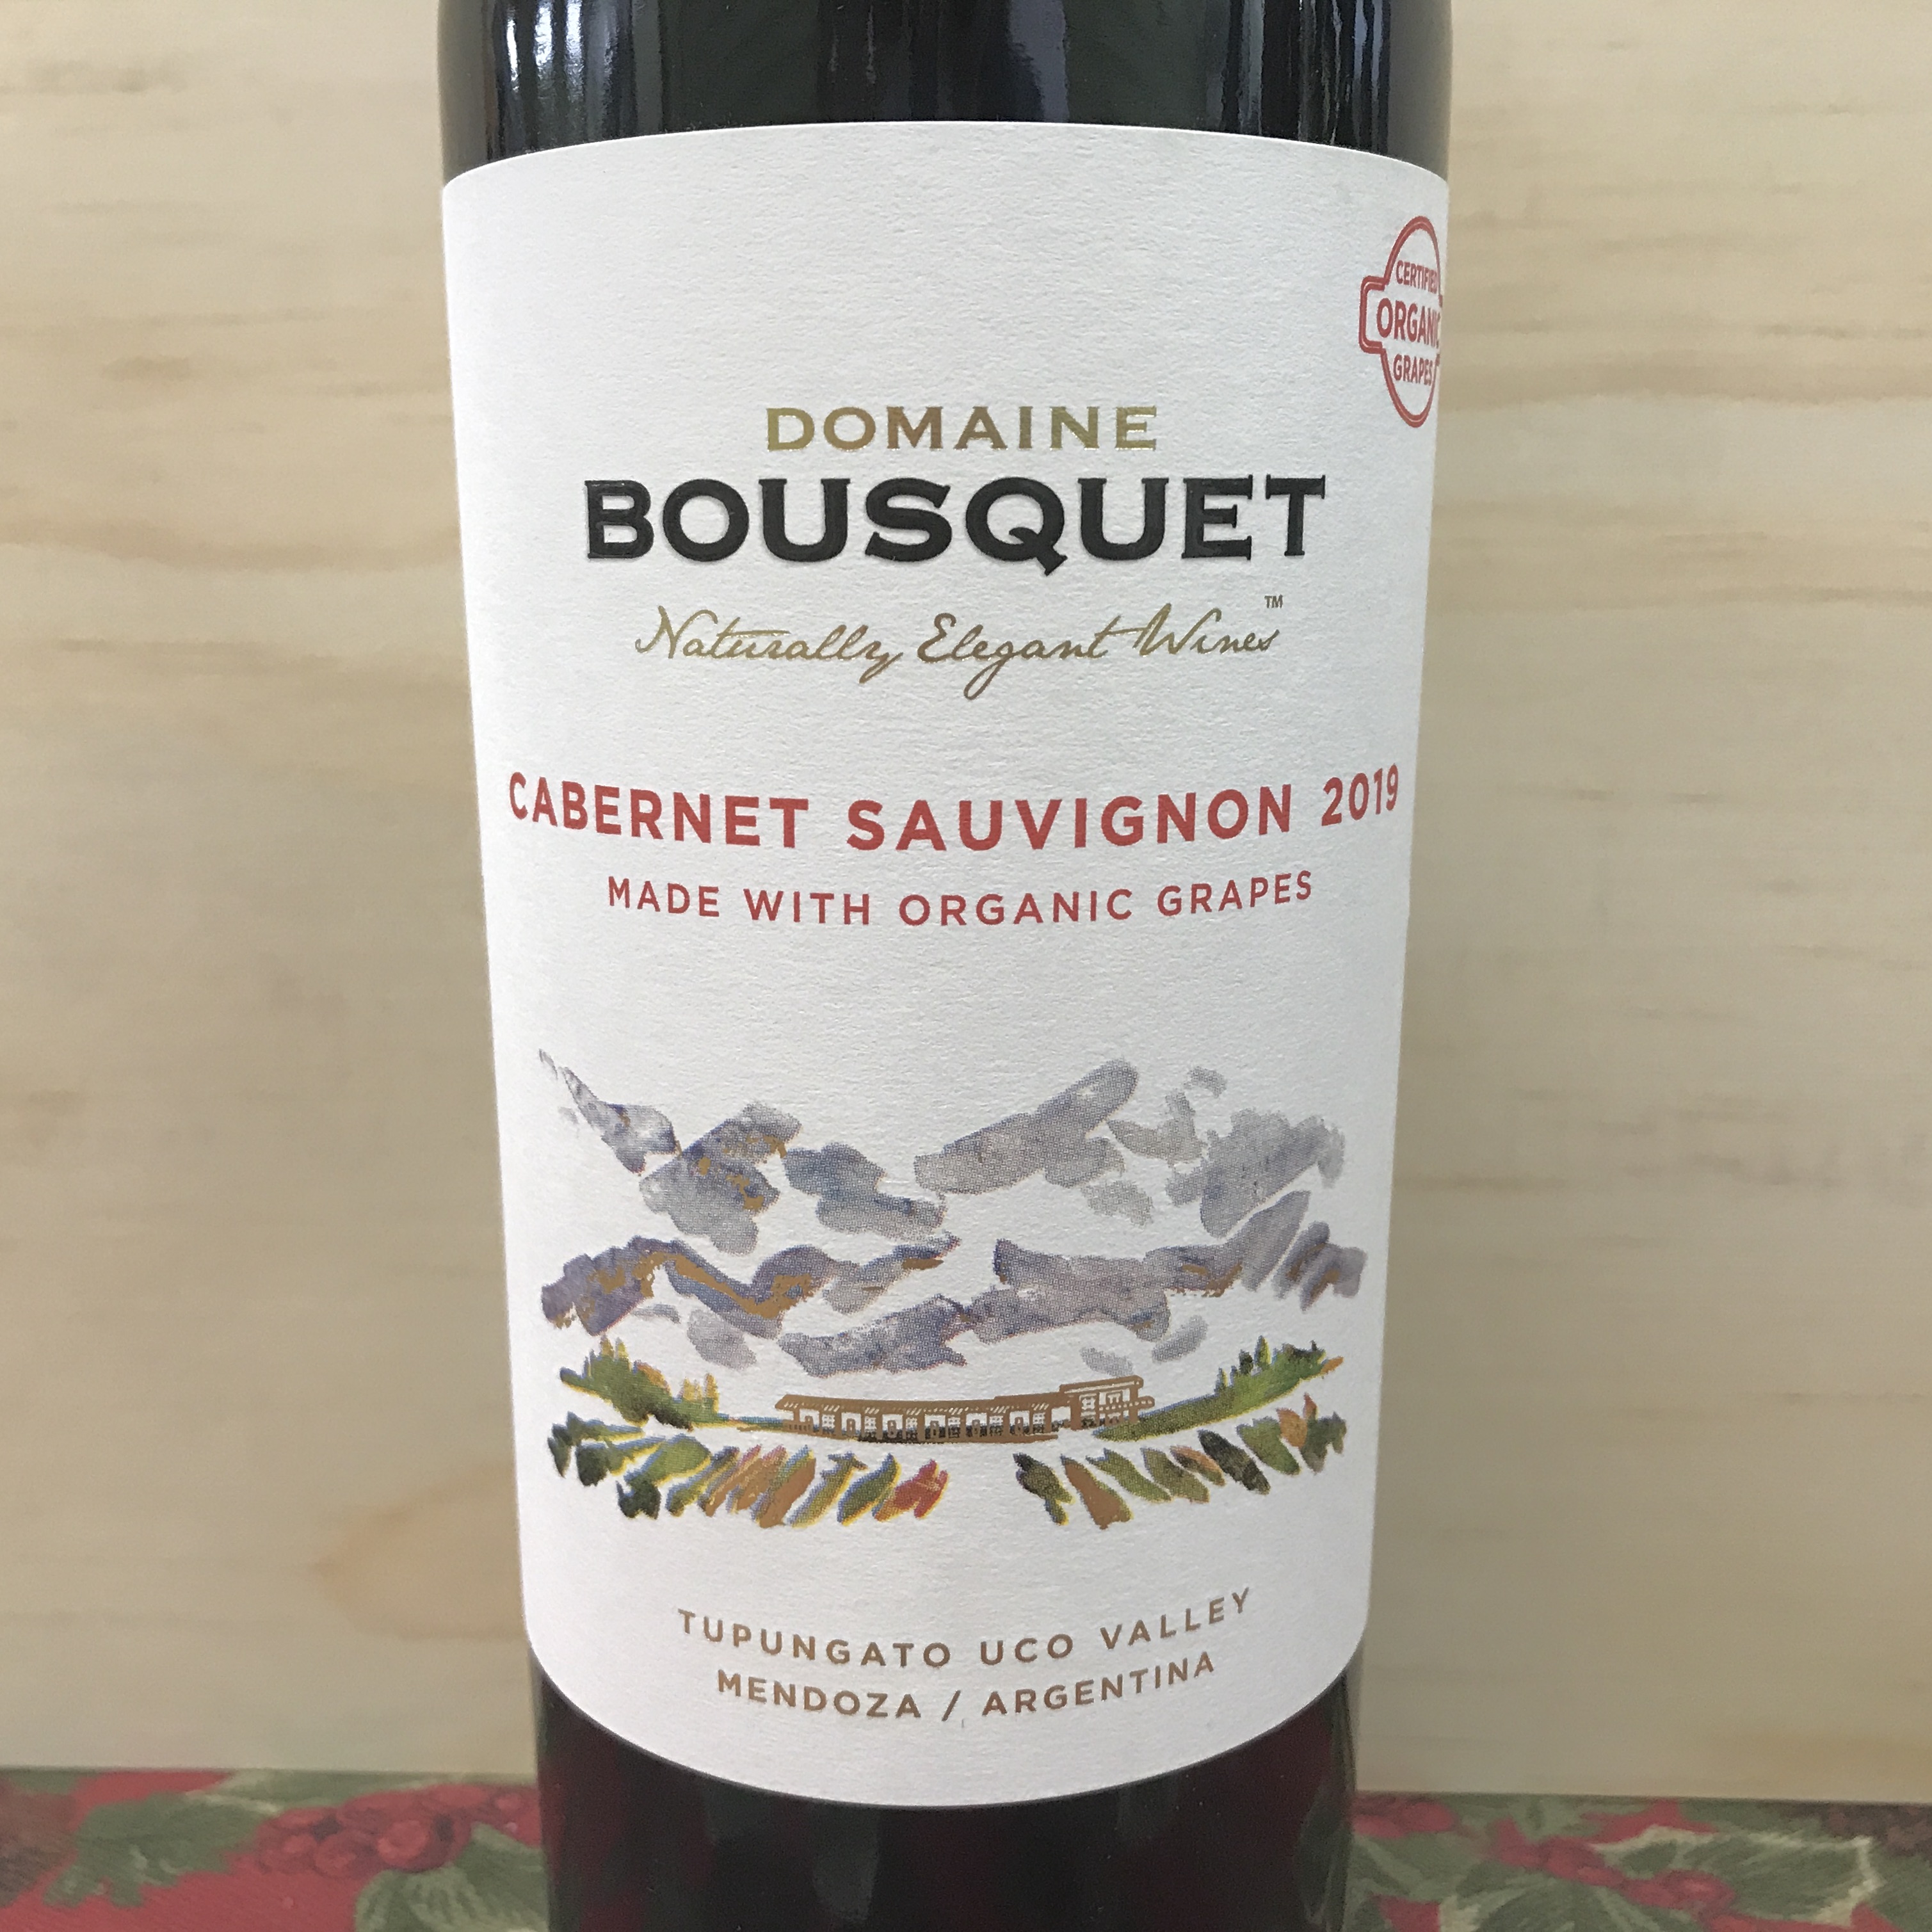 Domaine Bousquet Cabernet Sauvignon with Organic Grapes 2019